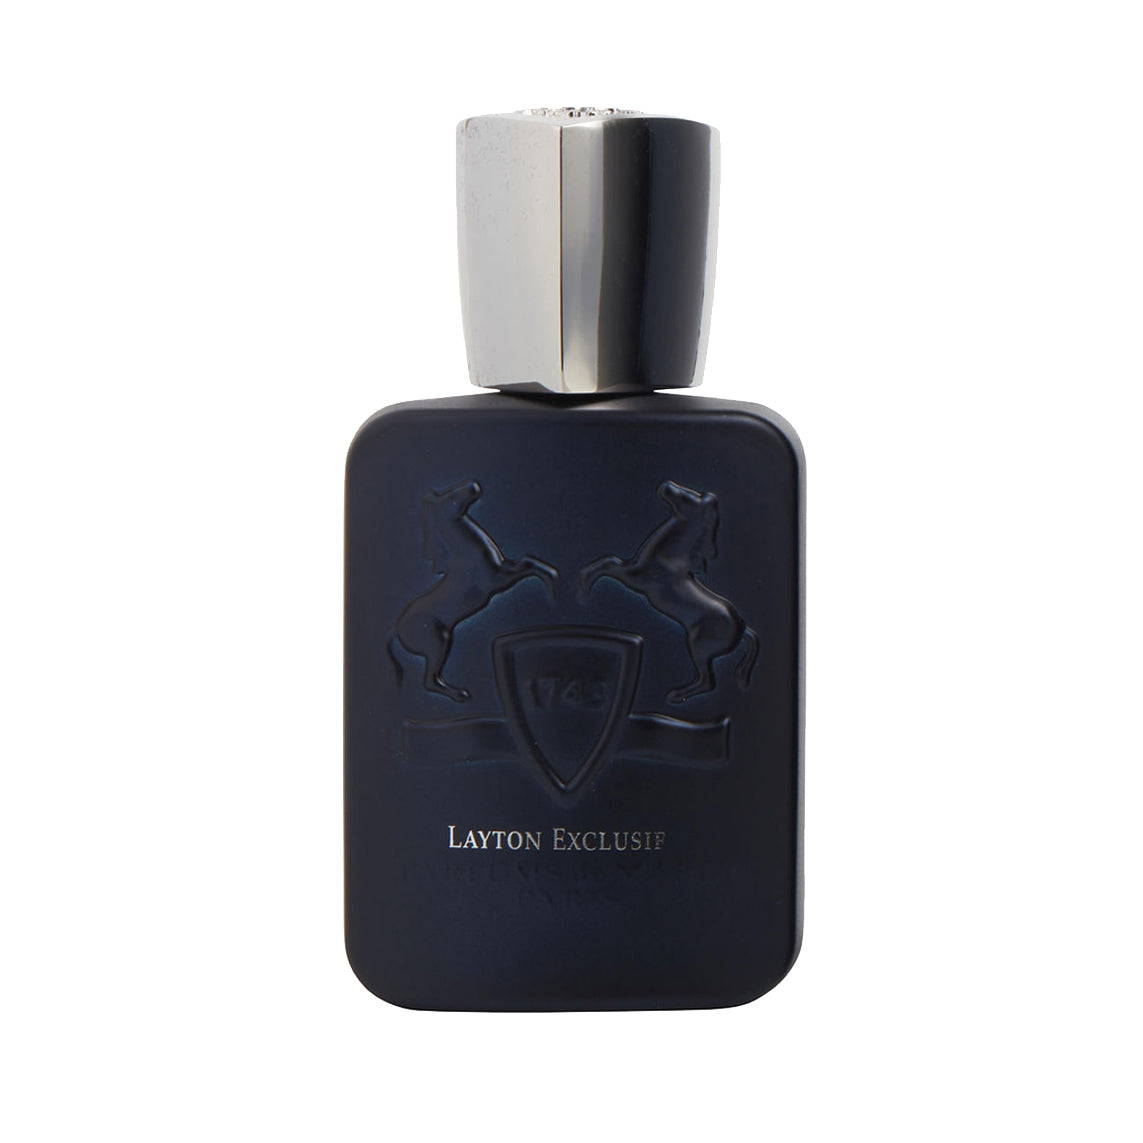 Parfums de Marly Layton Exclusif Eau de for Men – & Cologne Decant Fragrance Samples